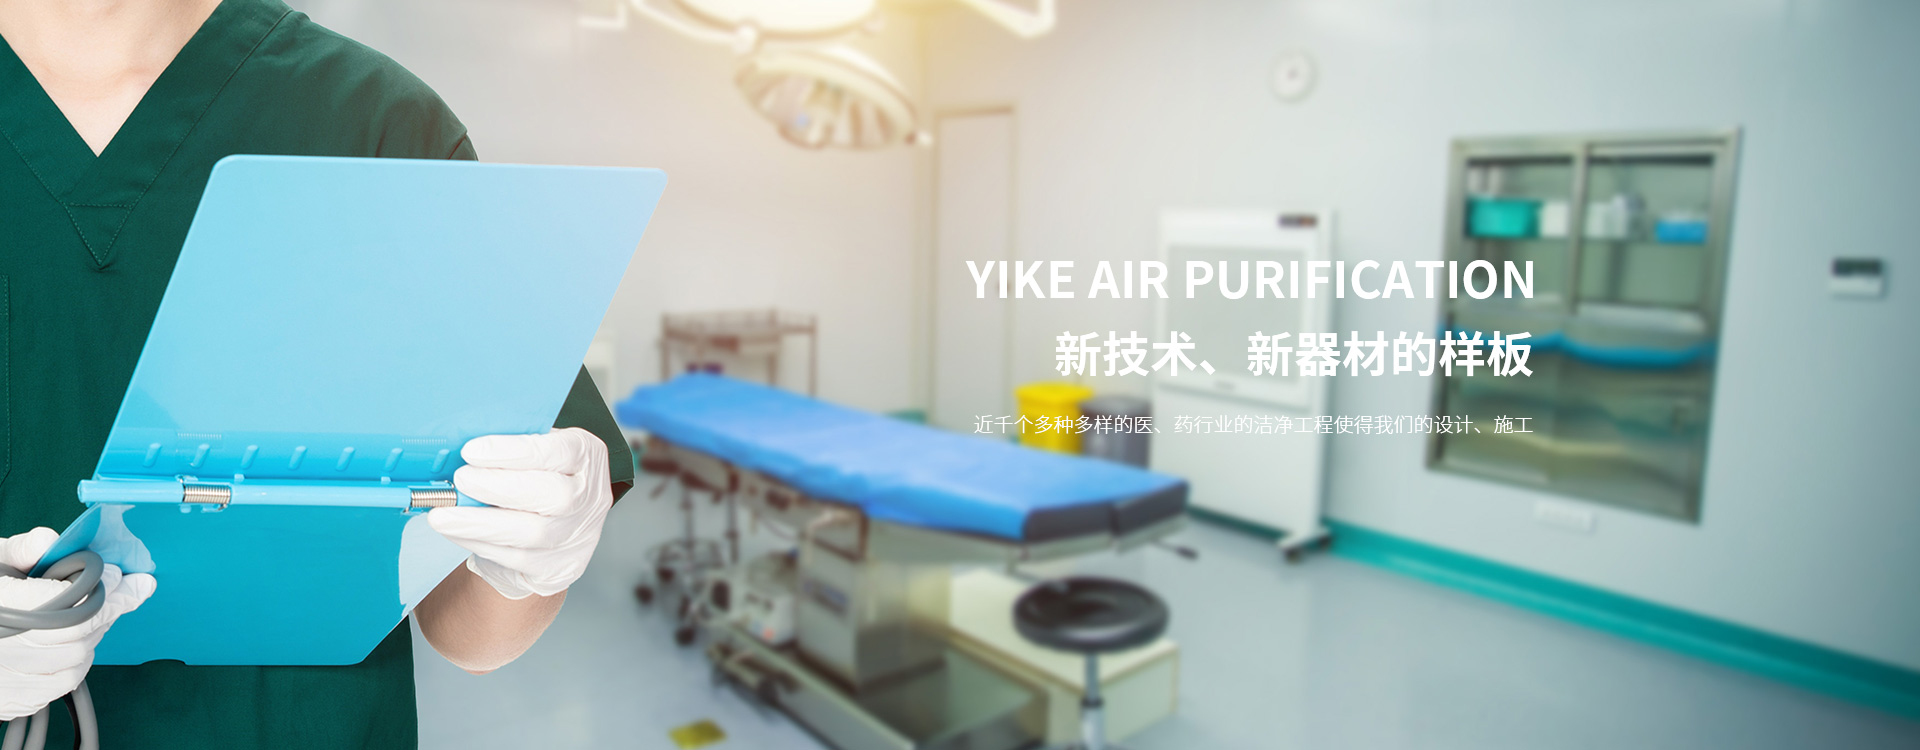 醫院凈化-凈化手術室-層流手術室-凈化裝修-凈化車間-杭州依科空氣凈化科技有限公司